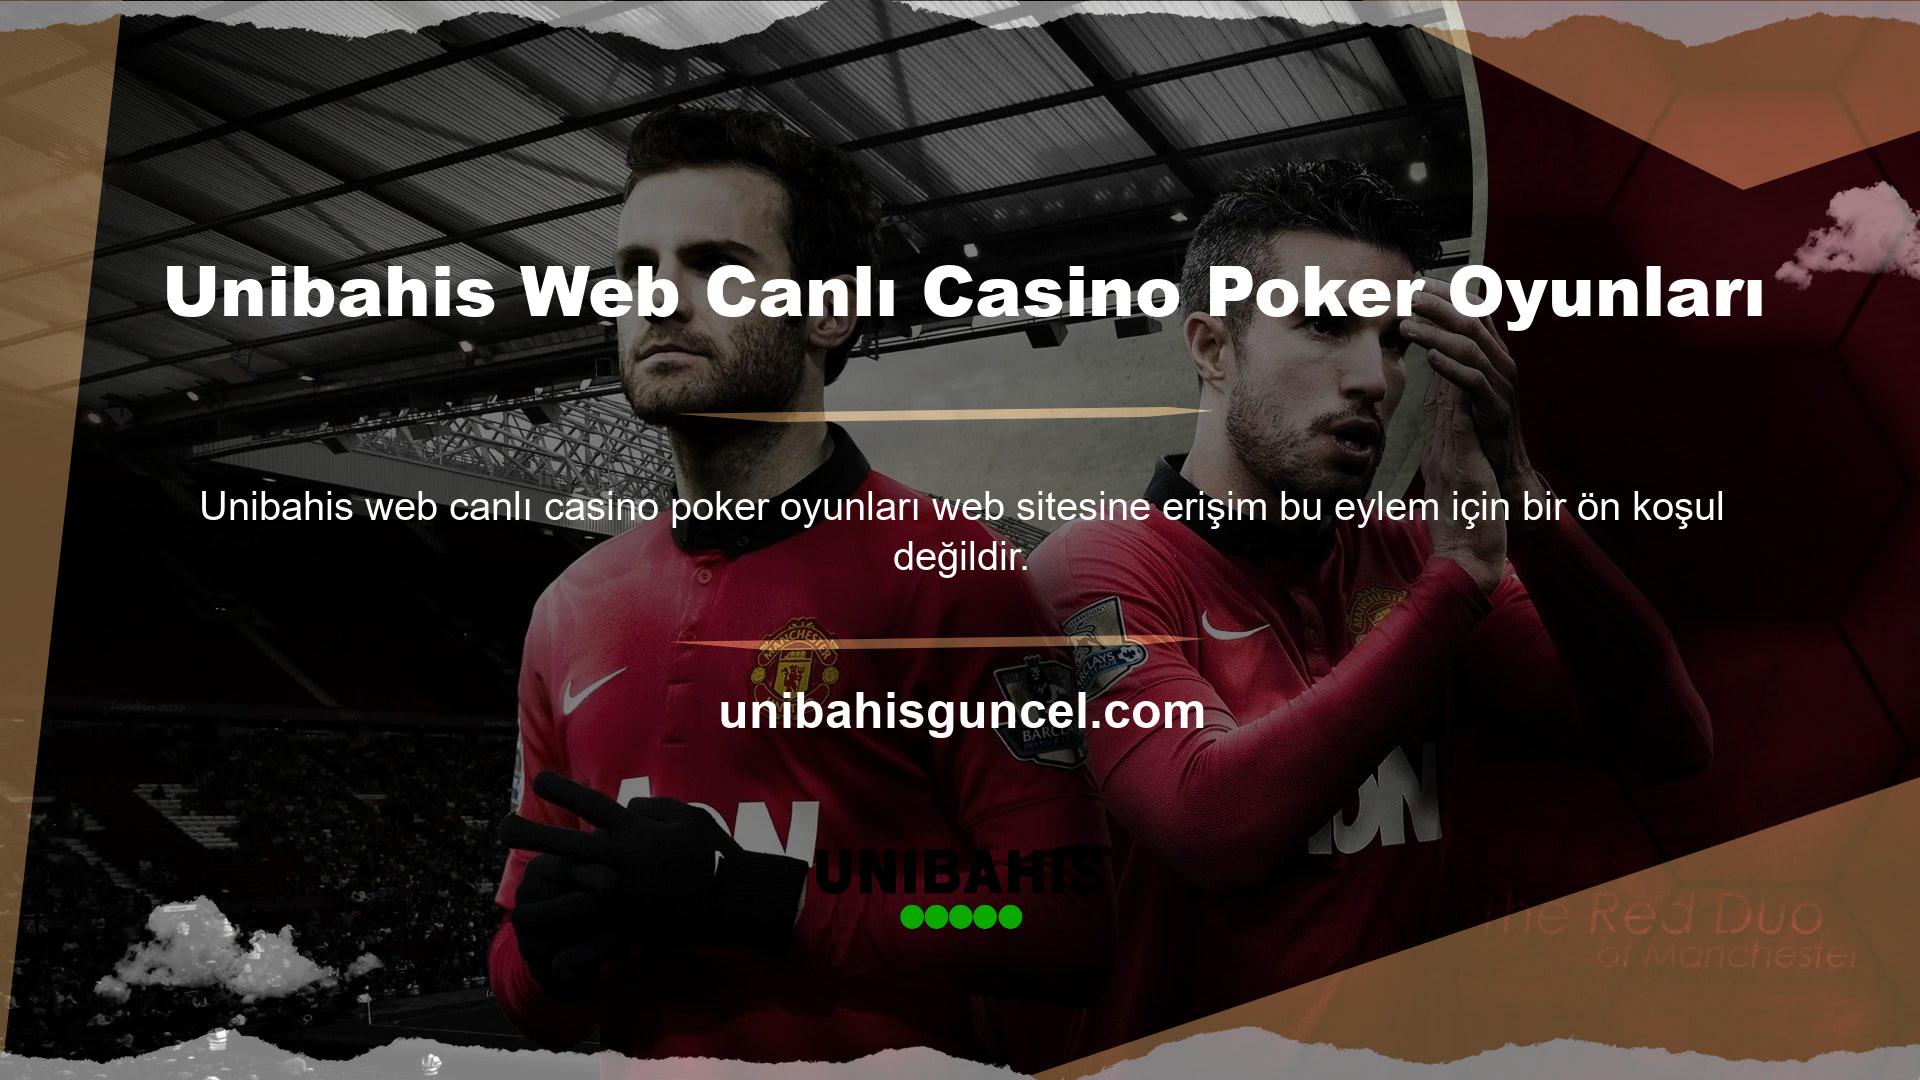 Unibahis web canlı casino poker oyunlarının basitliği ve anlaşılırlığı ortadadır